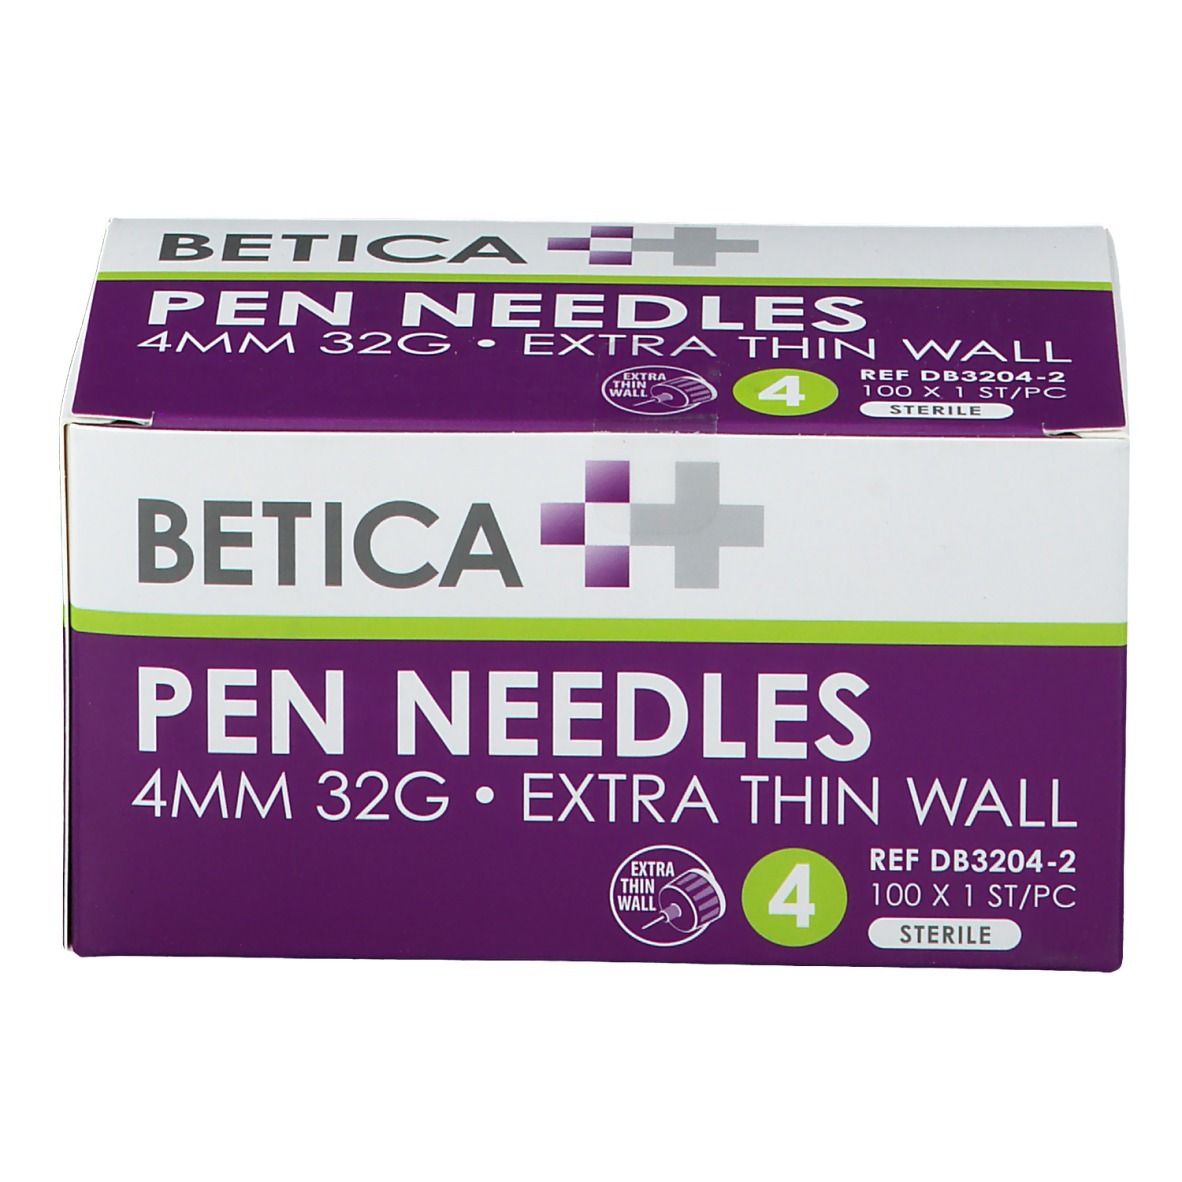 Betica Pennadeln 4 mm 32 g